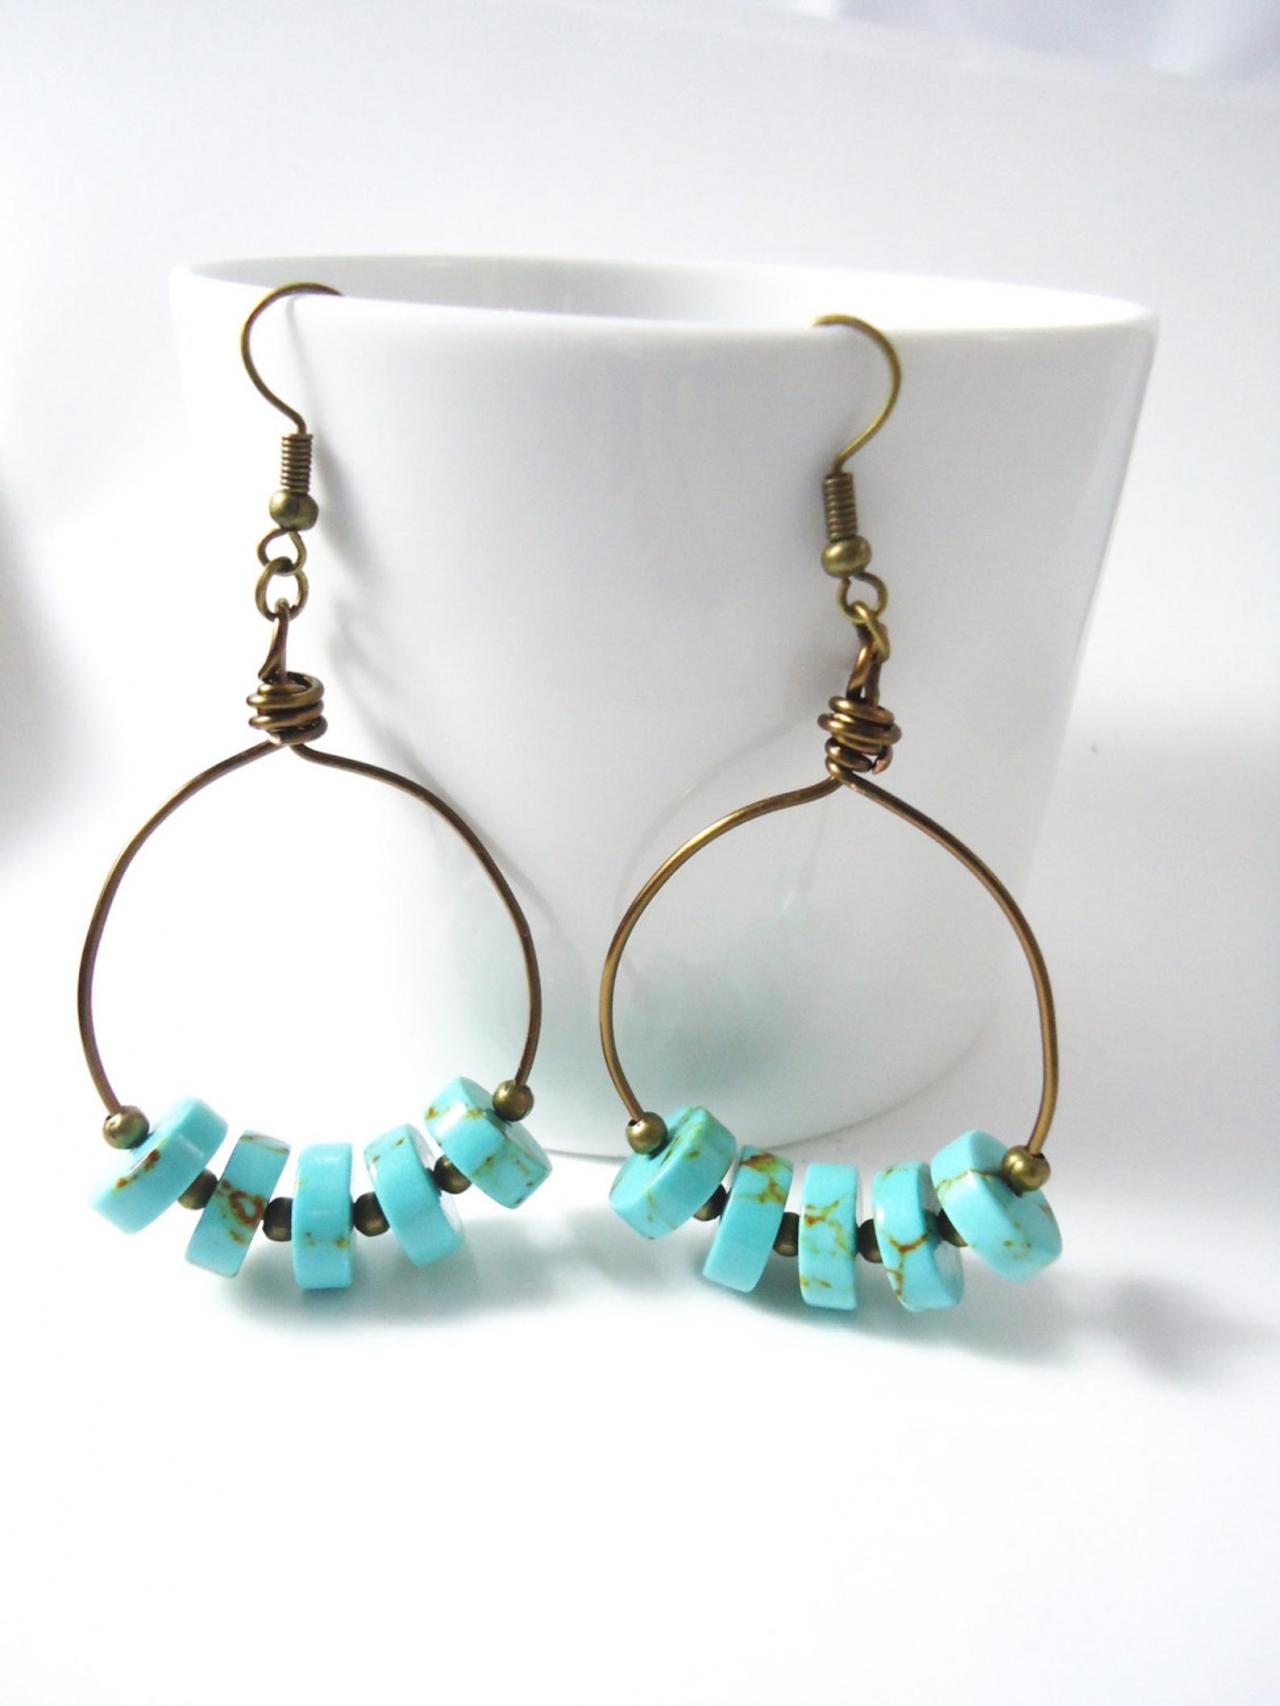 Turquoise Hoop Earrings - Bead Hoop Earrings - Gold Hoop Earrings - Turquoise Earrings - Turquoise Jewelry - Gold Earrings - Gold Jewelry